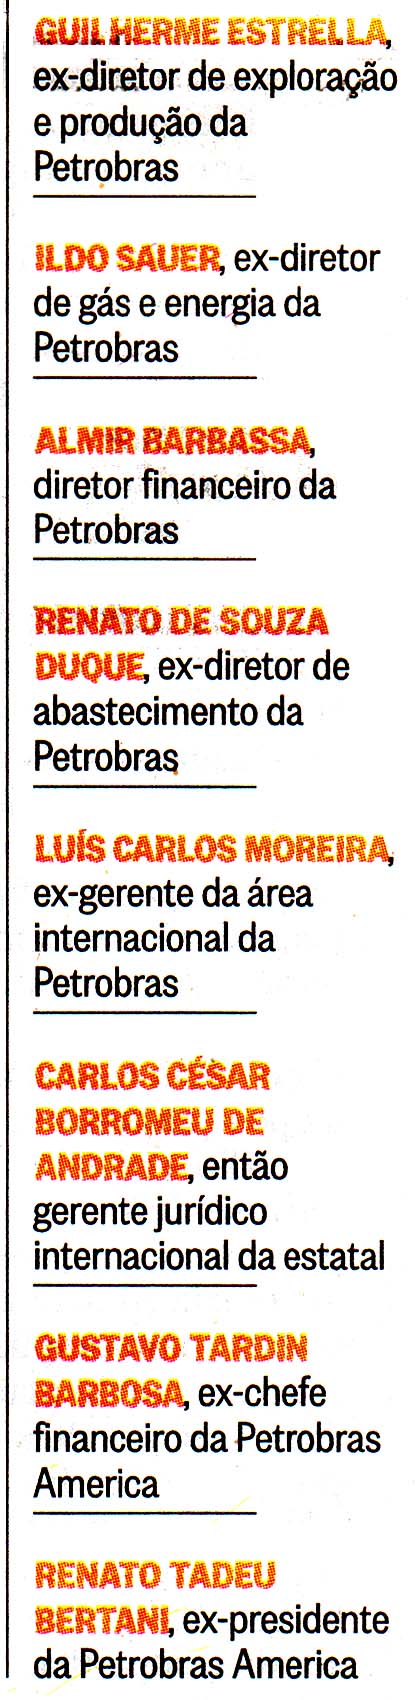 O Globo - 24/07/2014